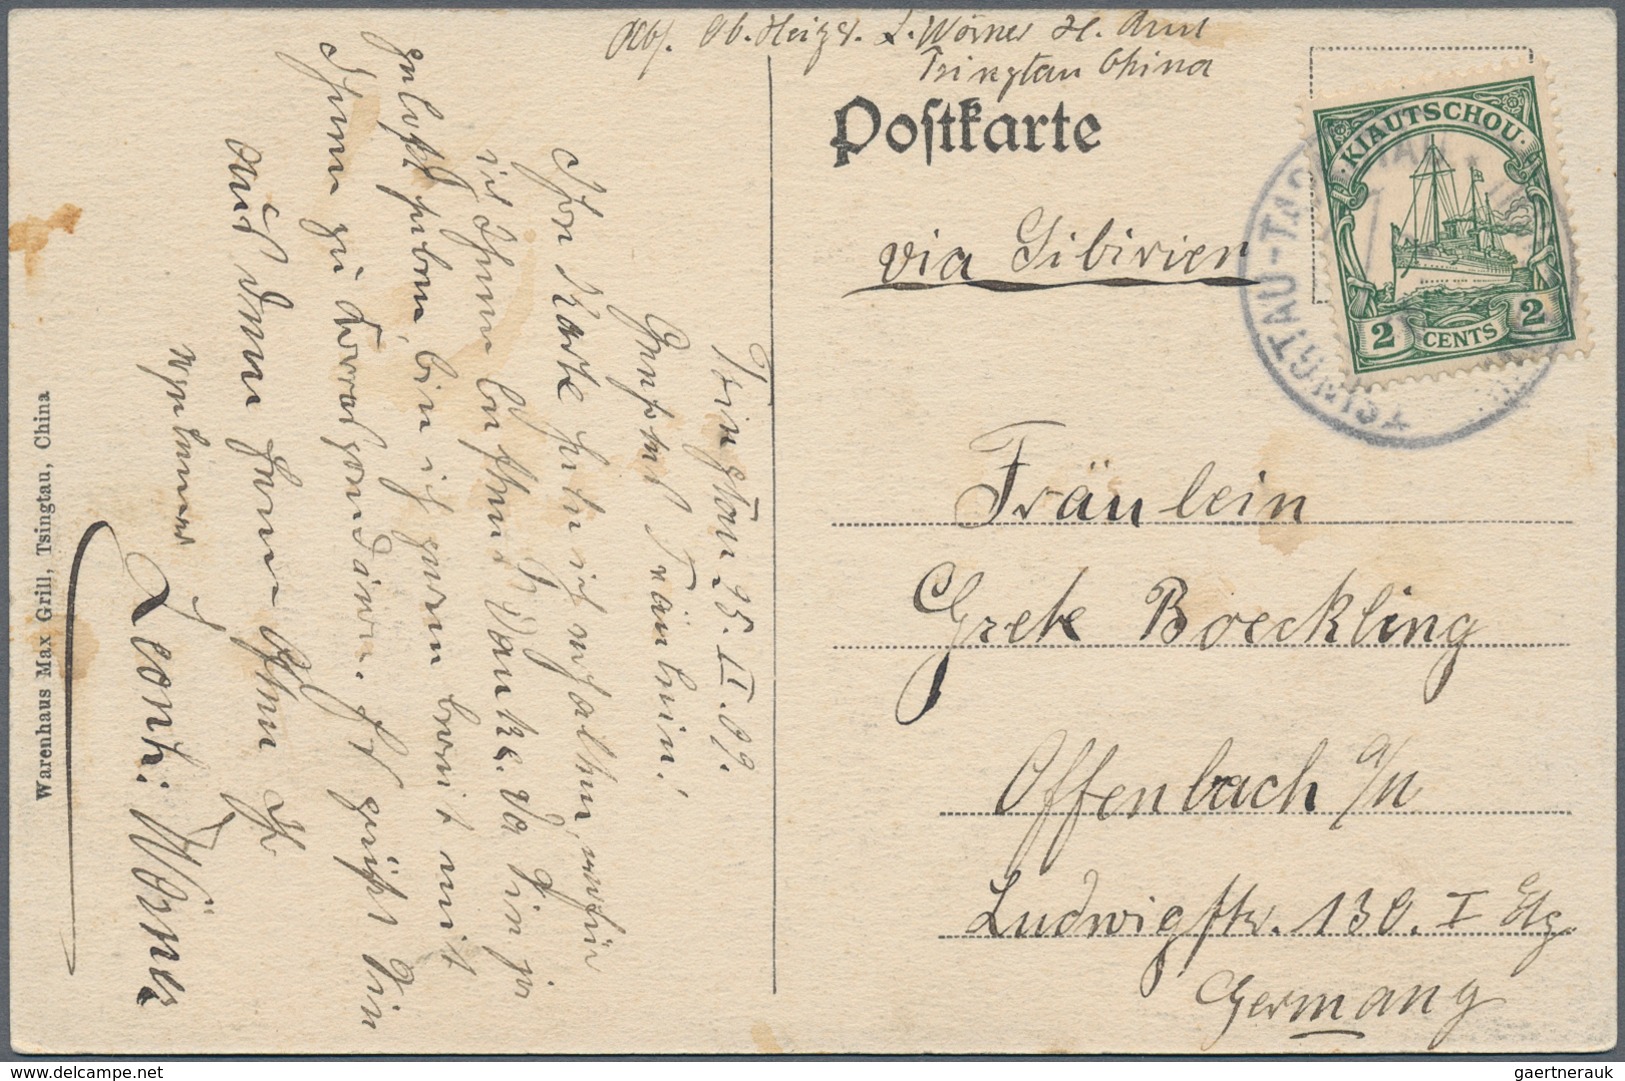 Deutsche Kolonien - Kiautschou: 1898, Brief ab "TAITUNGTSCHEN" 1910, AK (10) mit u.a. "TSINTAU" (2),